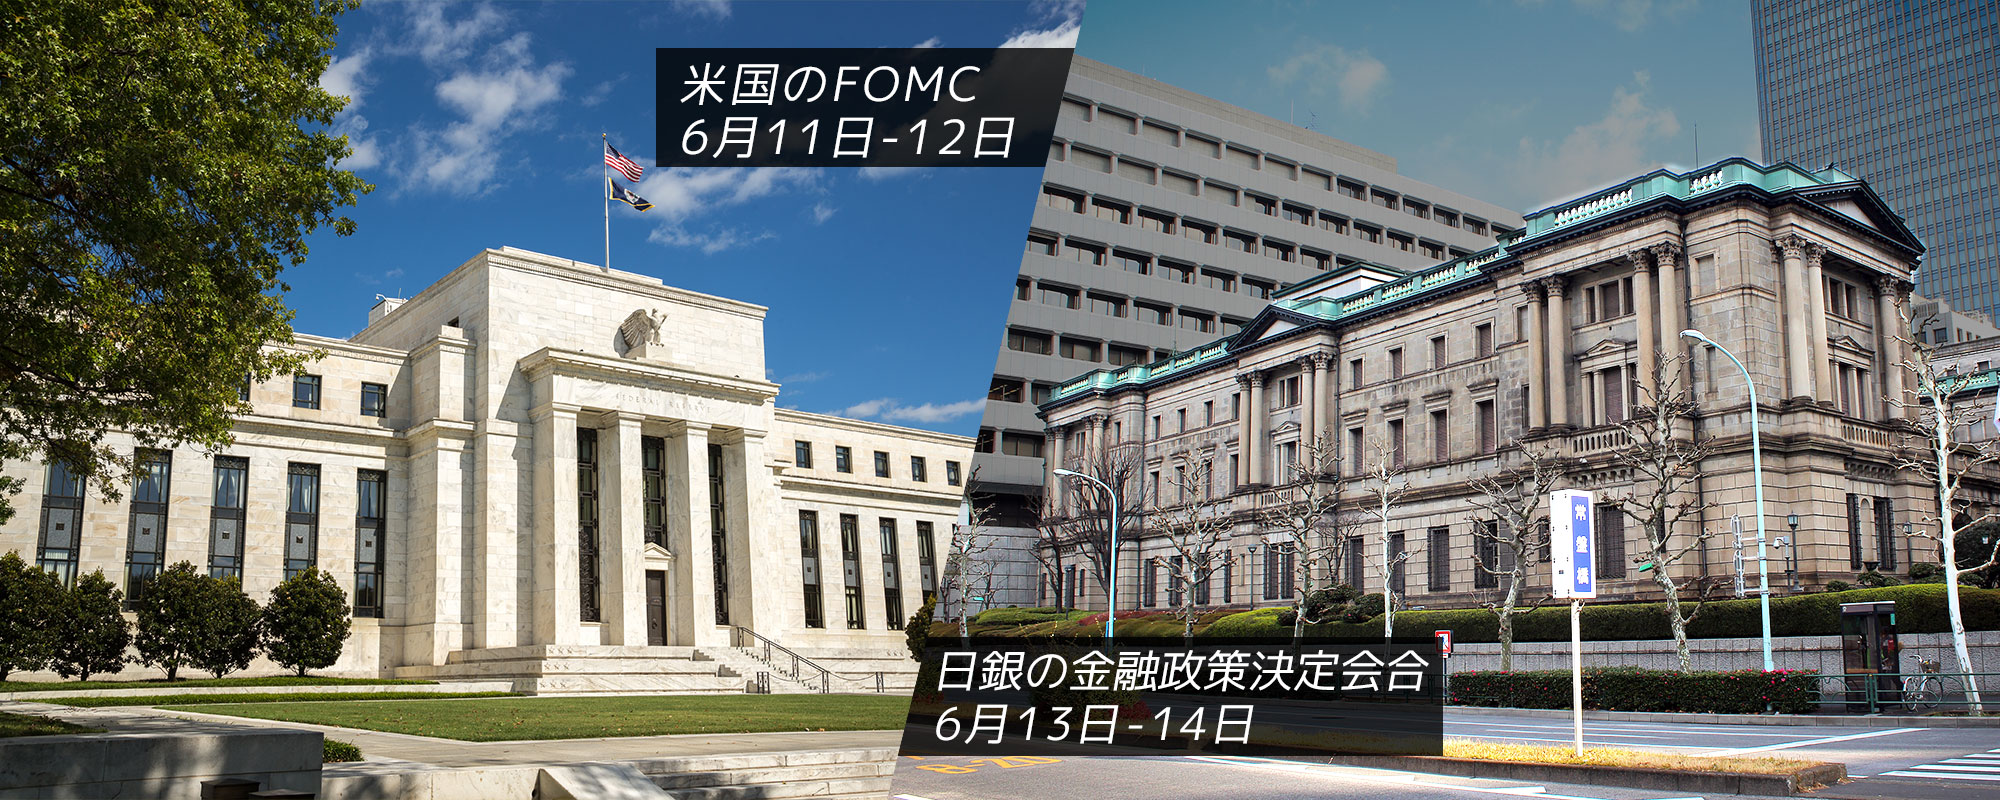 米国のFOMC（連邦公開市場委員会）の開催は6月11日-12日で、日本銀行の金融政策決定会合は6月13日-14日に開催